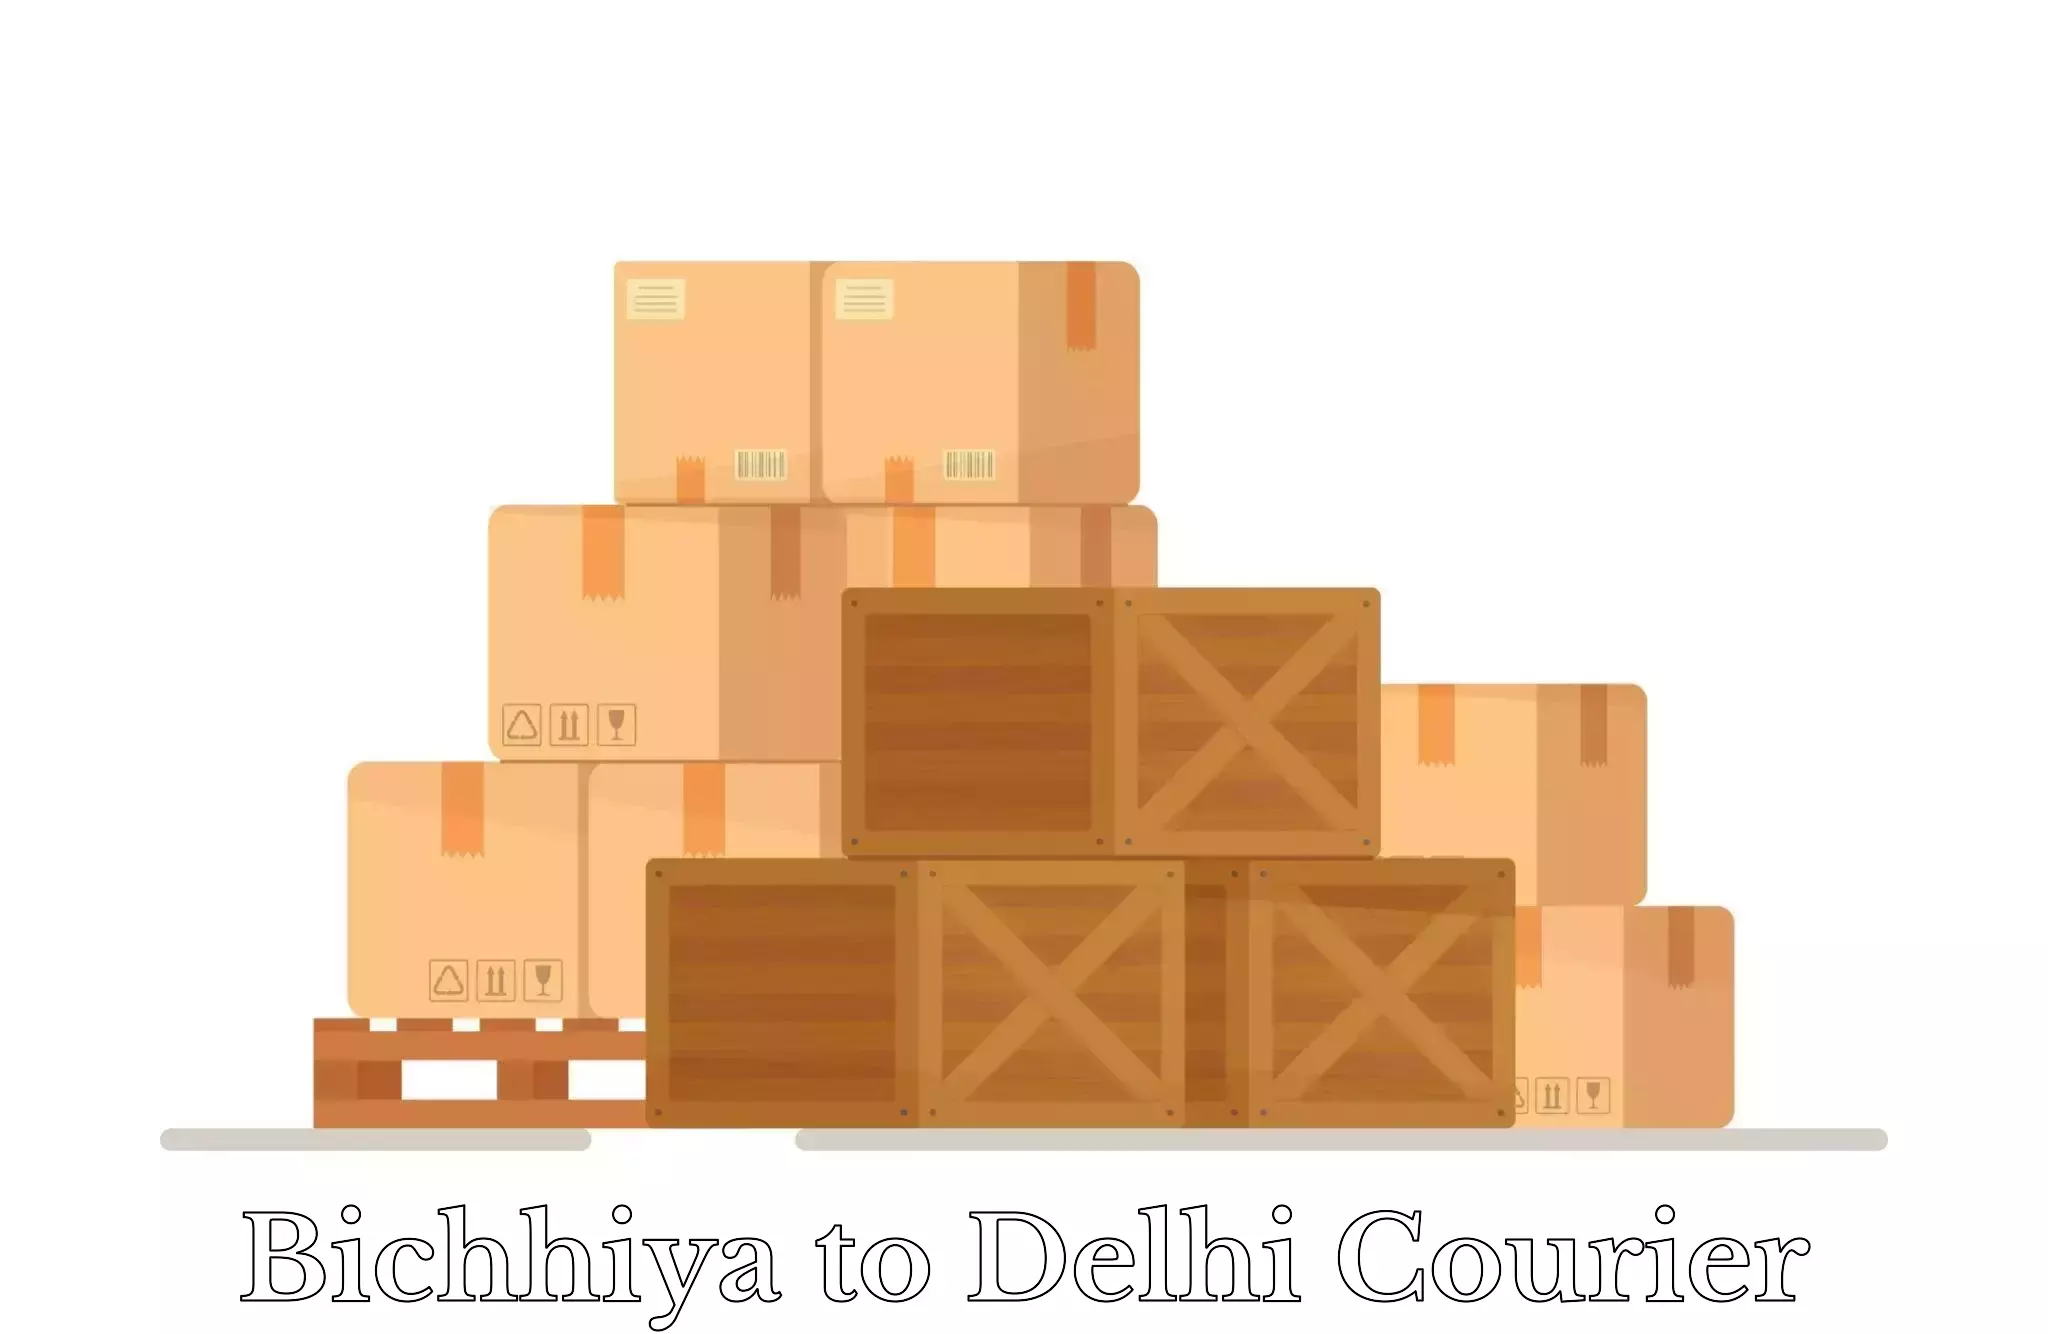 Luggage shipment logistics in Bichhiya to Sarojini Nagar